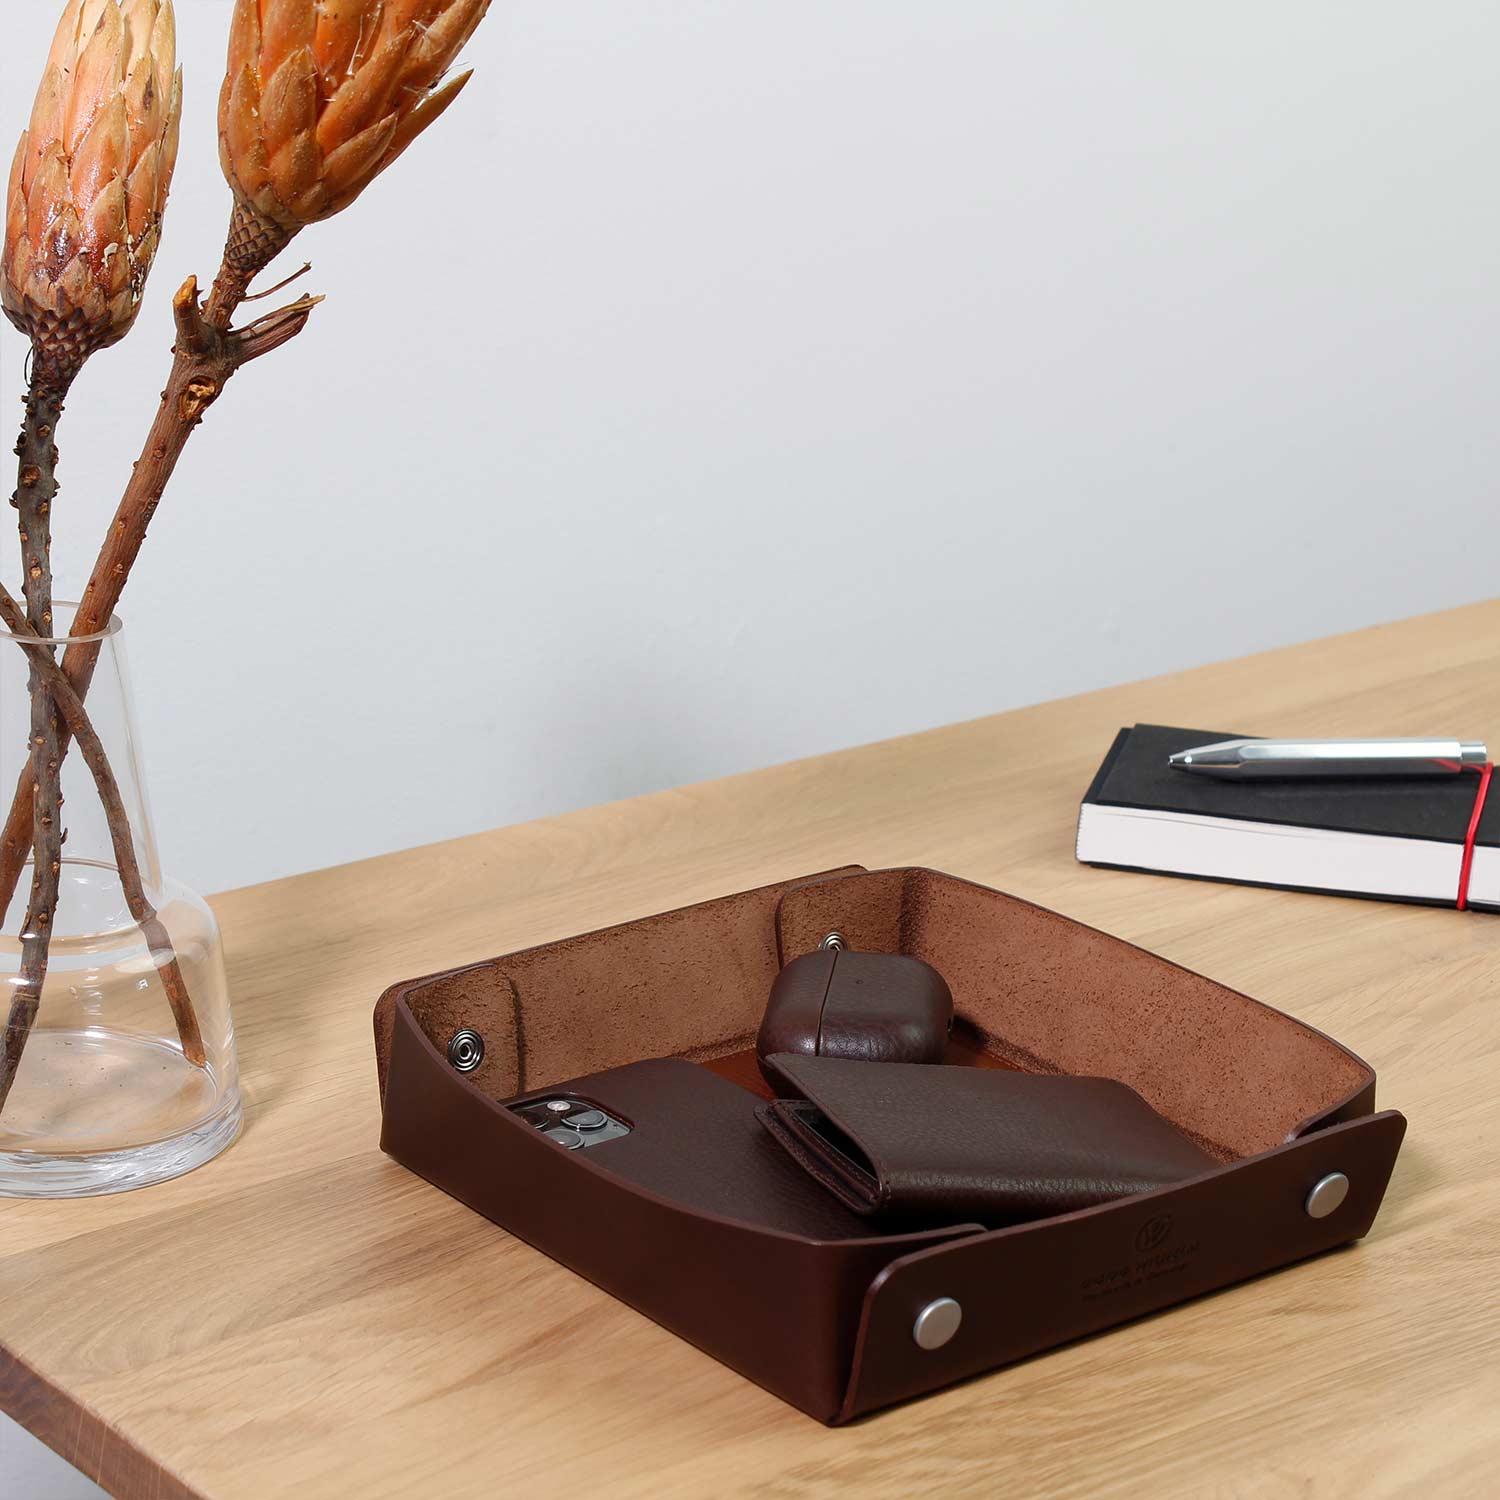 Taschenleerer Leder von Goodwilhelm in der Farbe chocolate mit AirPods, Portemonnaie und Handy drin